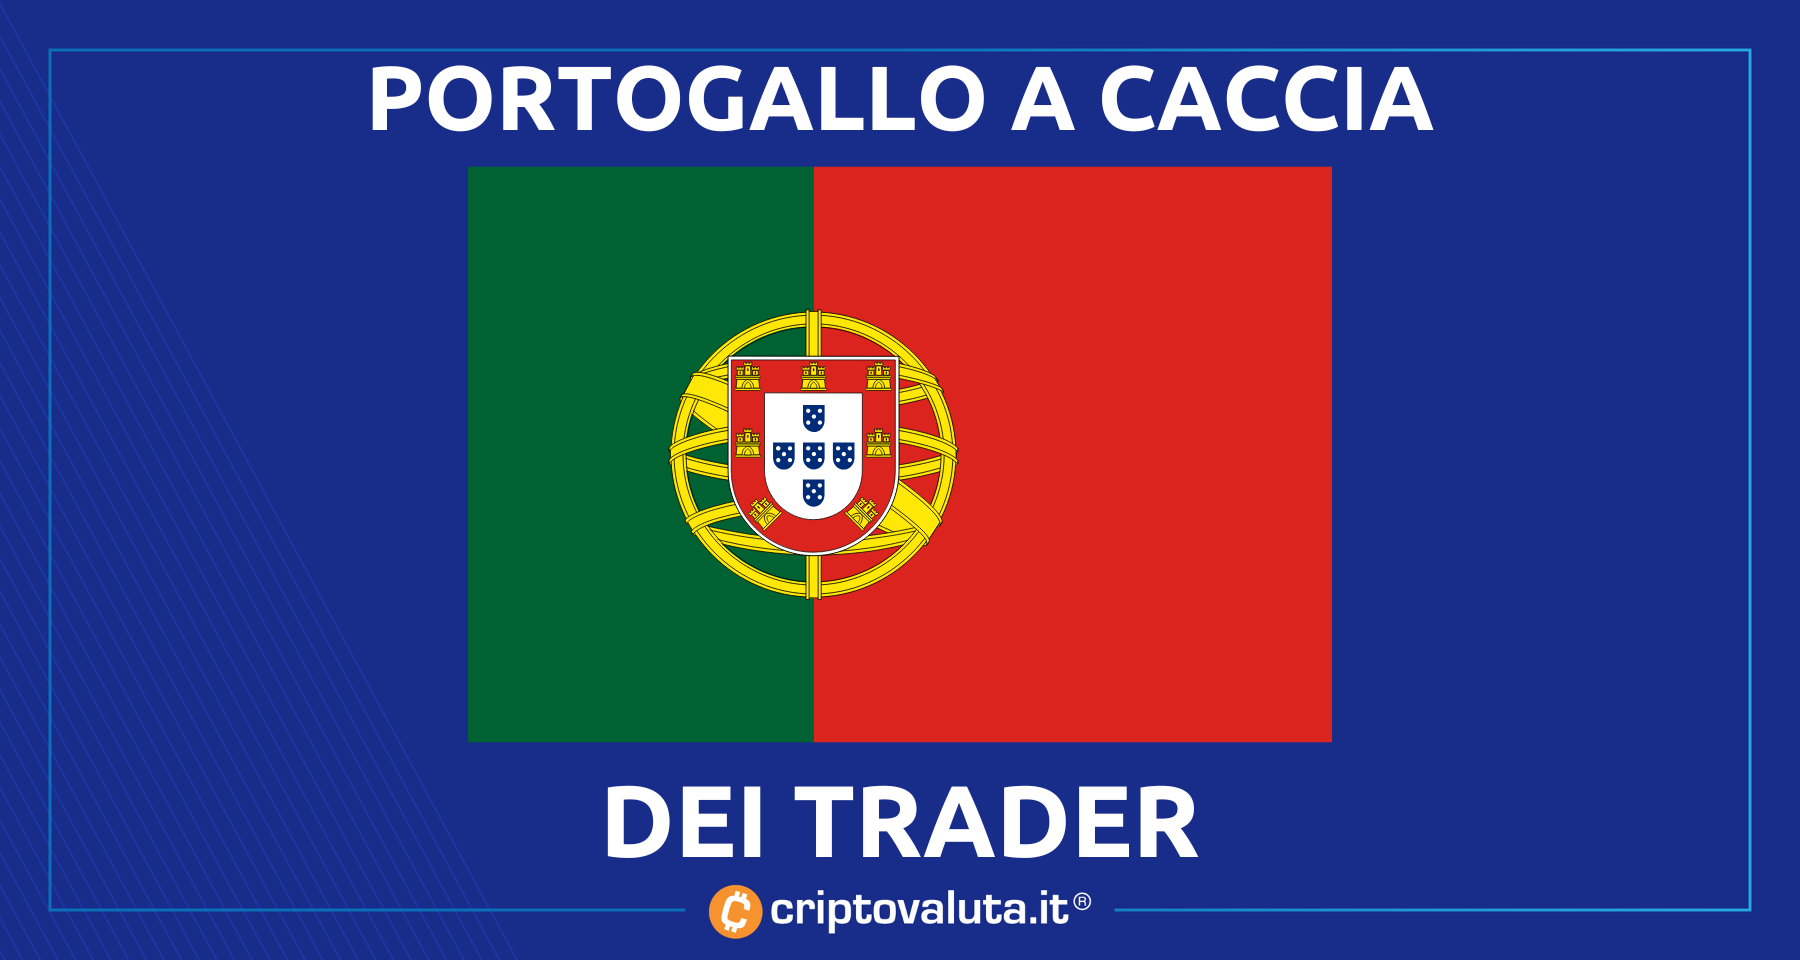 Tasse trading in Bitcoin e crypto! | Proposta shock n Portogallo